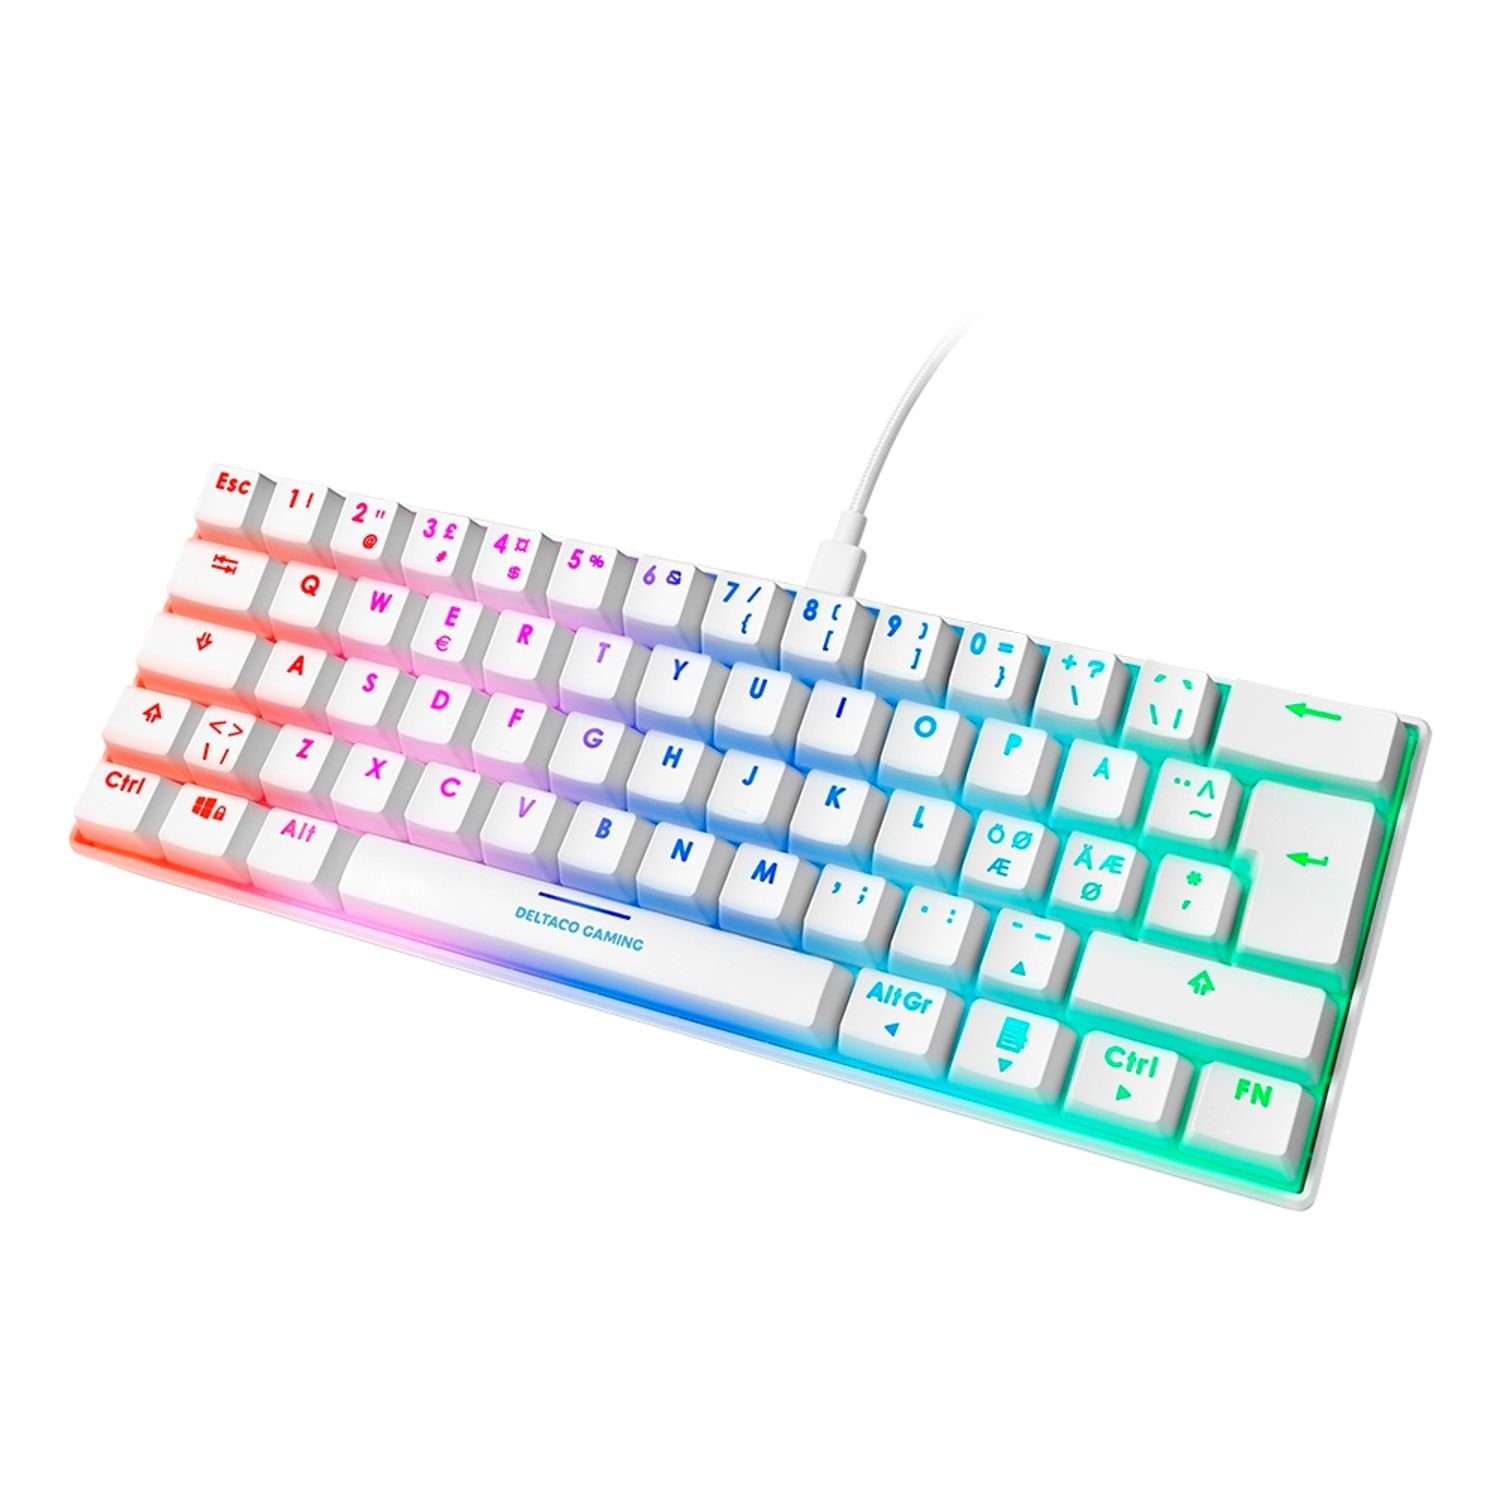 DELTACO Mechanische Mini Gaming Tastatur 62 Tasten LED RGB Beleuchtung Gaming-Tastatur (RGB-LED-Beleuchtung, 100% Anti-Ghosting N-Key-Rollover, Farbe weiß) | Mechanische Tastaturen